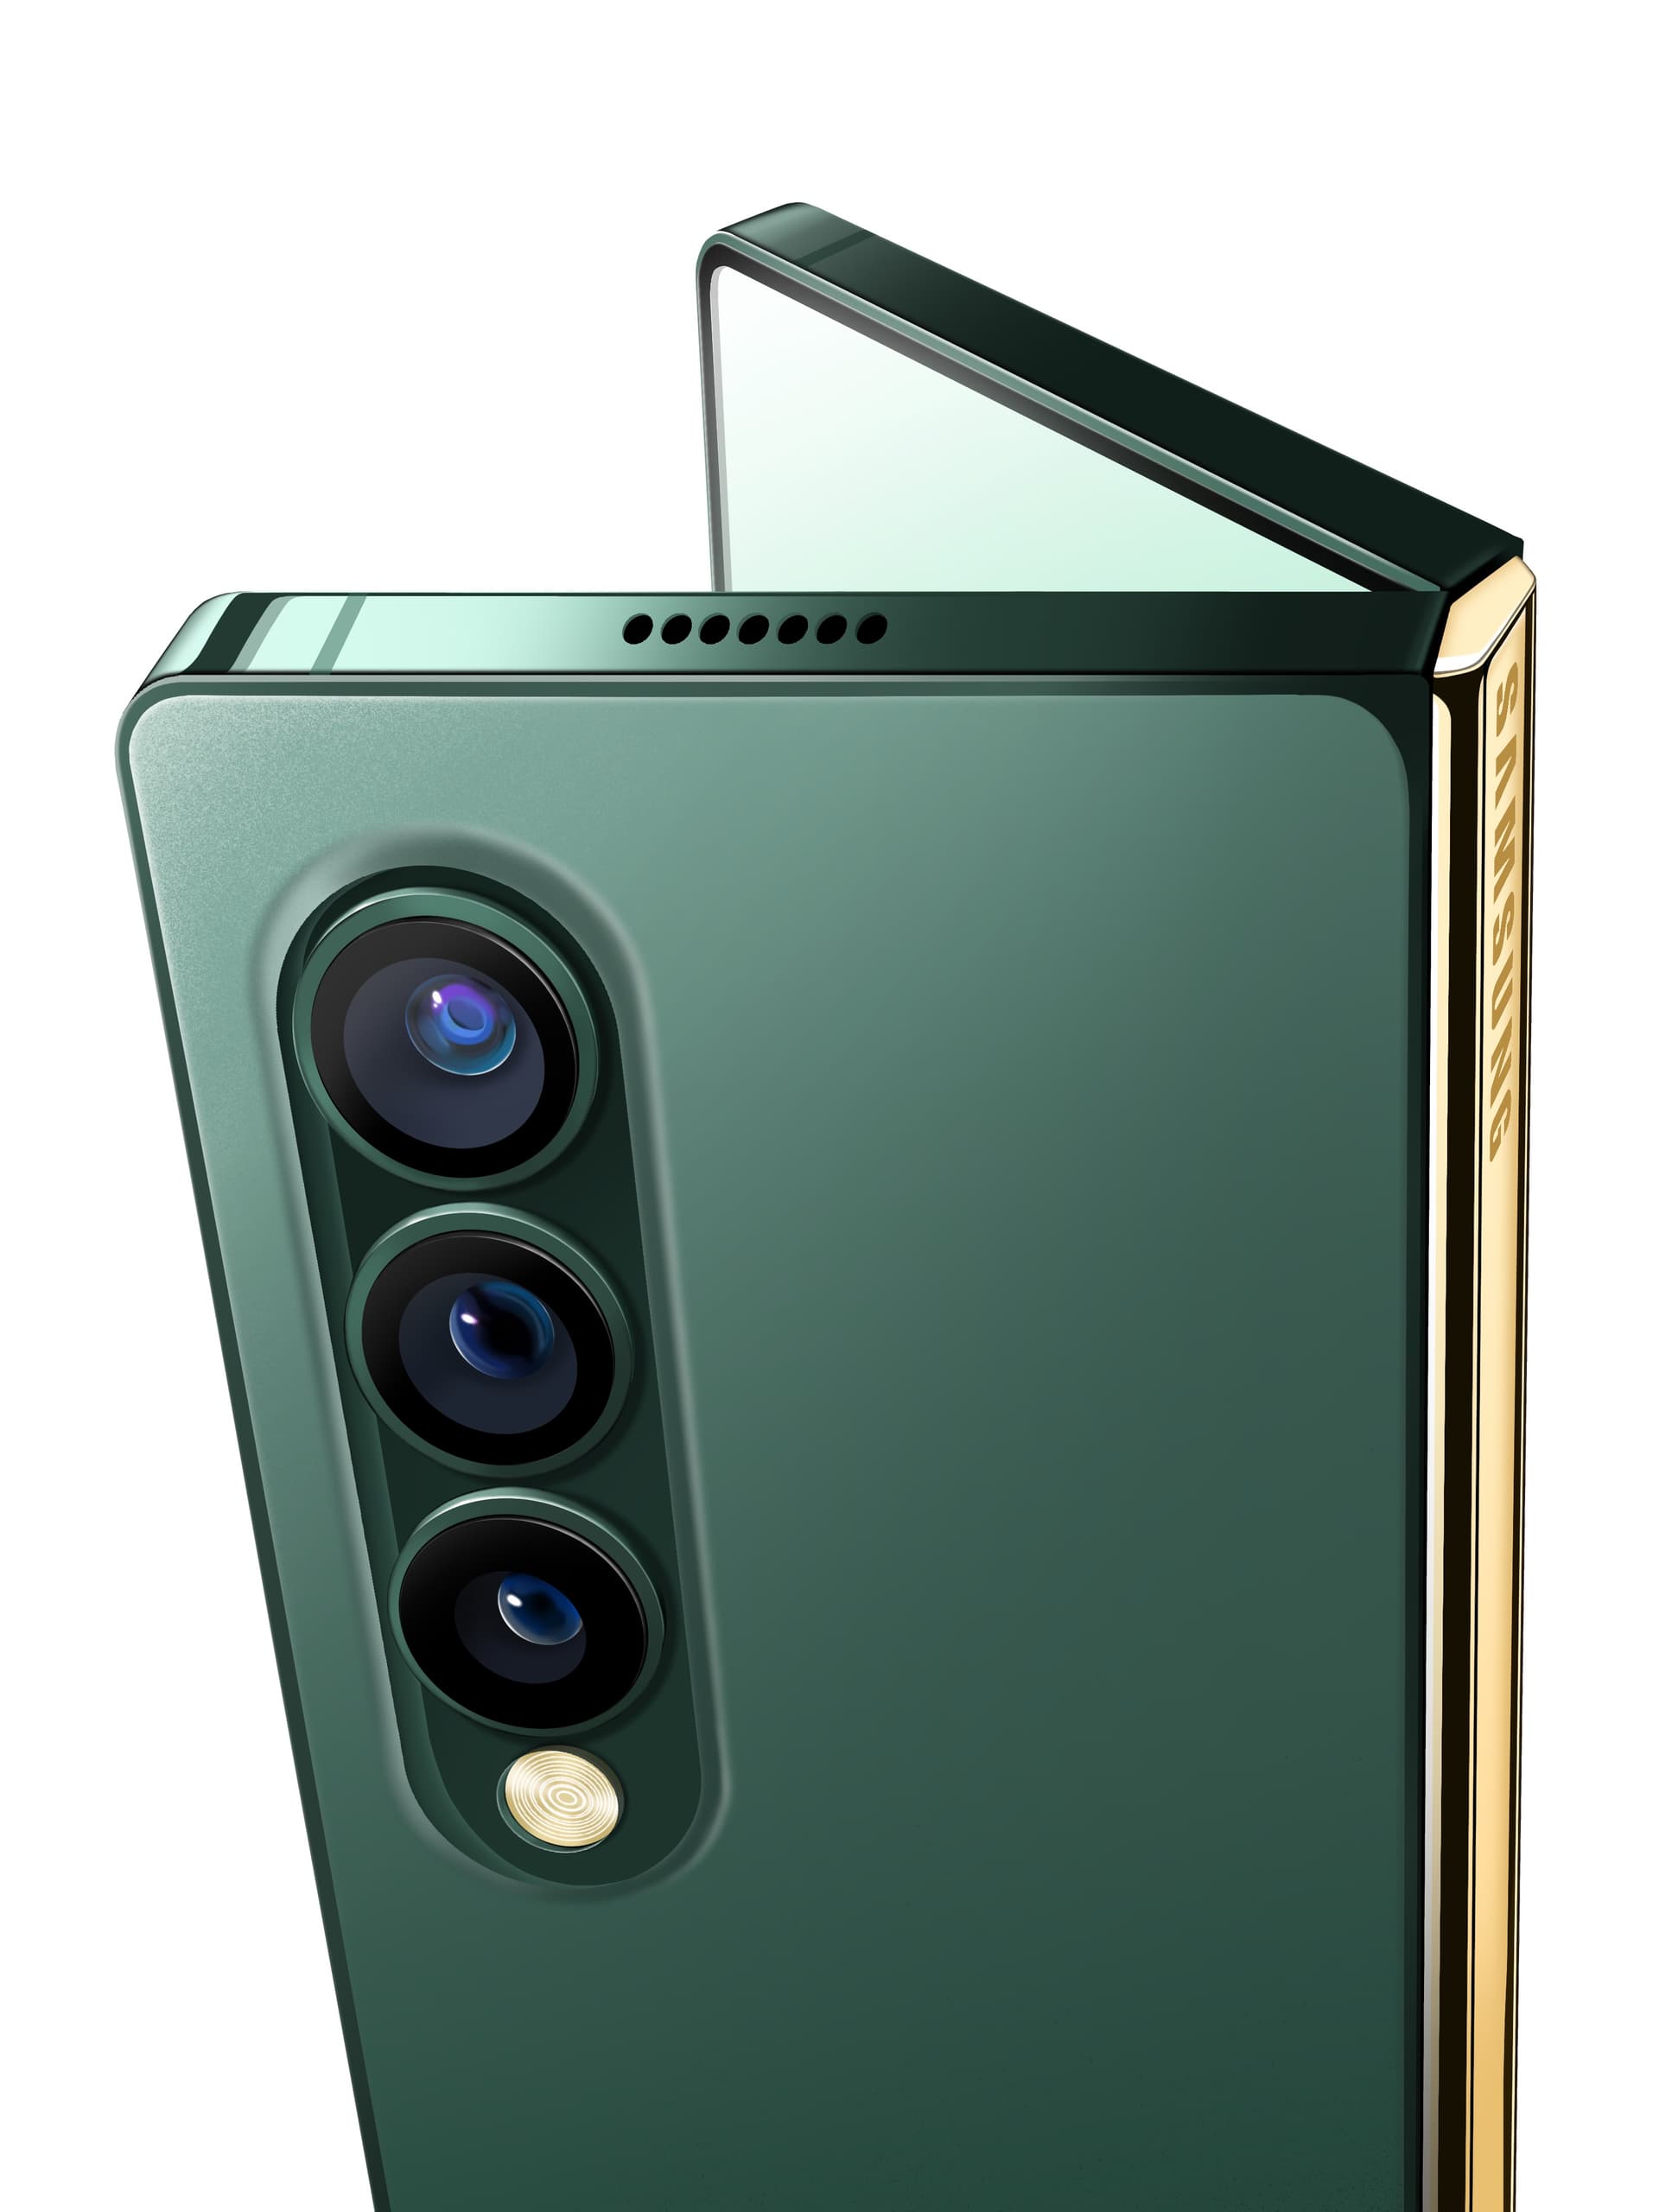 Samsung Galaxy Z Fold 3 thiết kế kế tương tự với các thiết bị iPhone 12